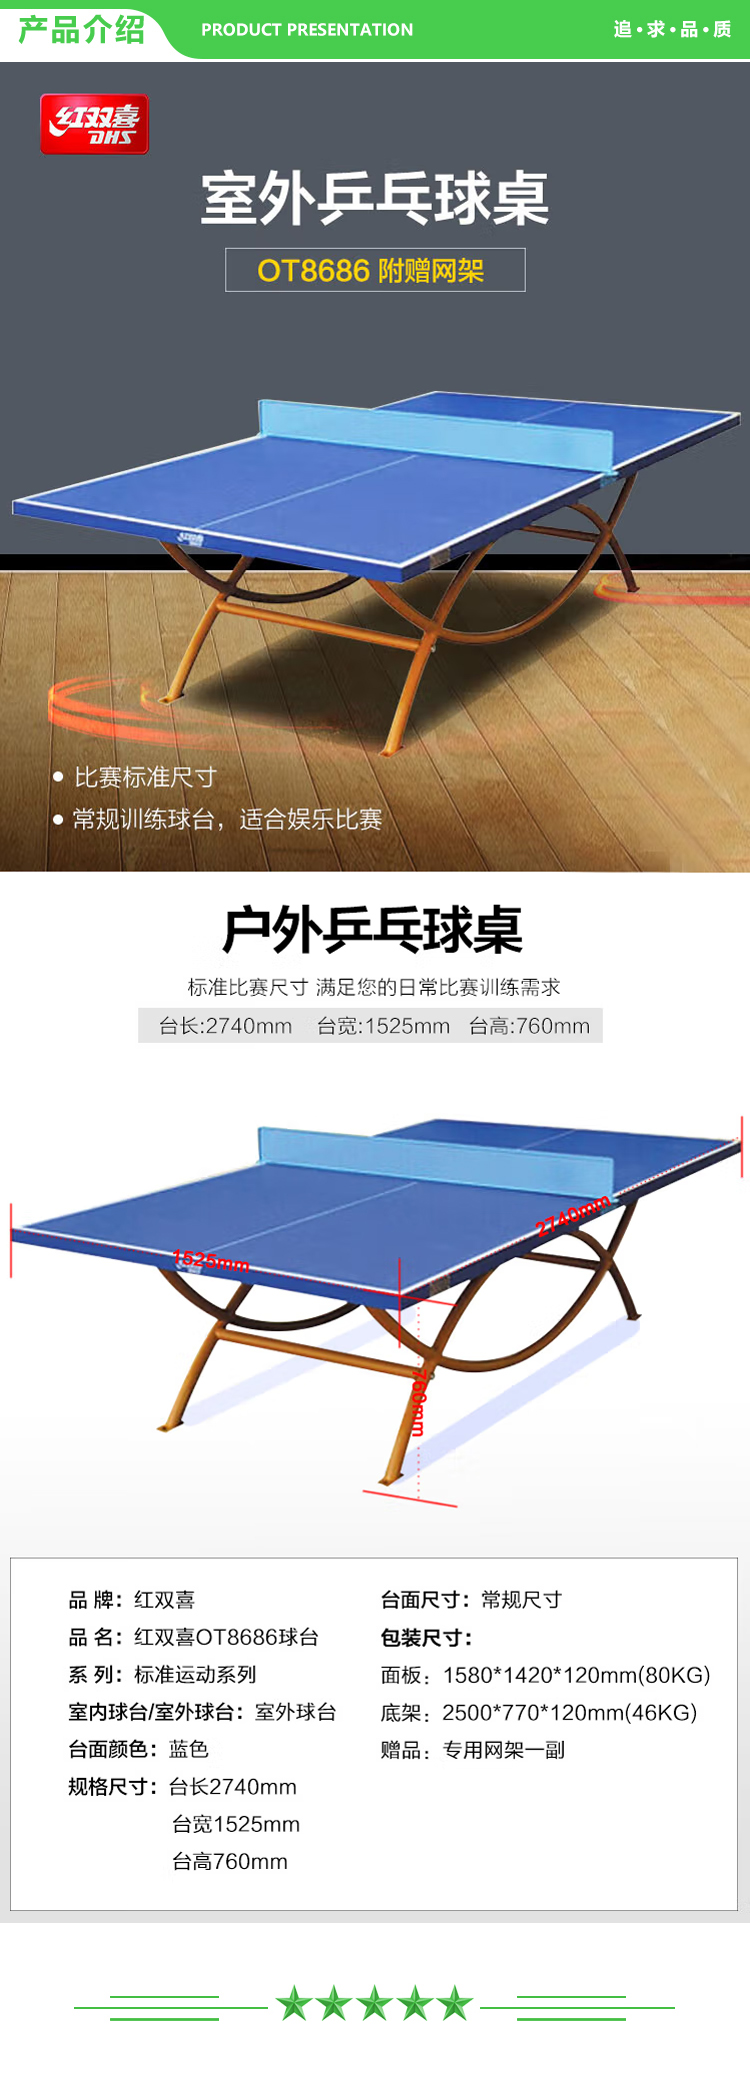 红双喜 DHS DXBD163-1(OT8686) 户外乒乓球桌室外乒乓球台训练比赛用乒乓球案子  (2).jpg